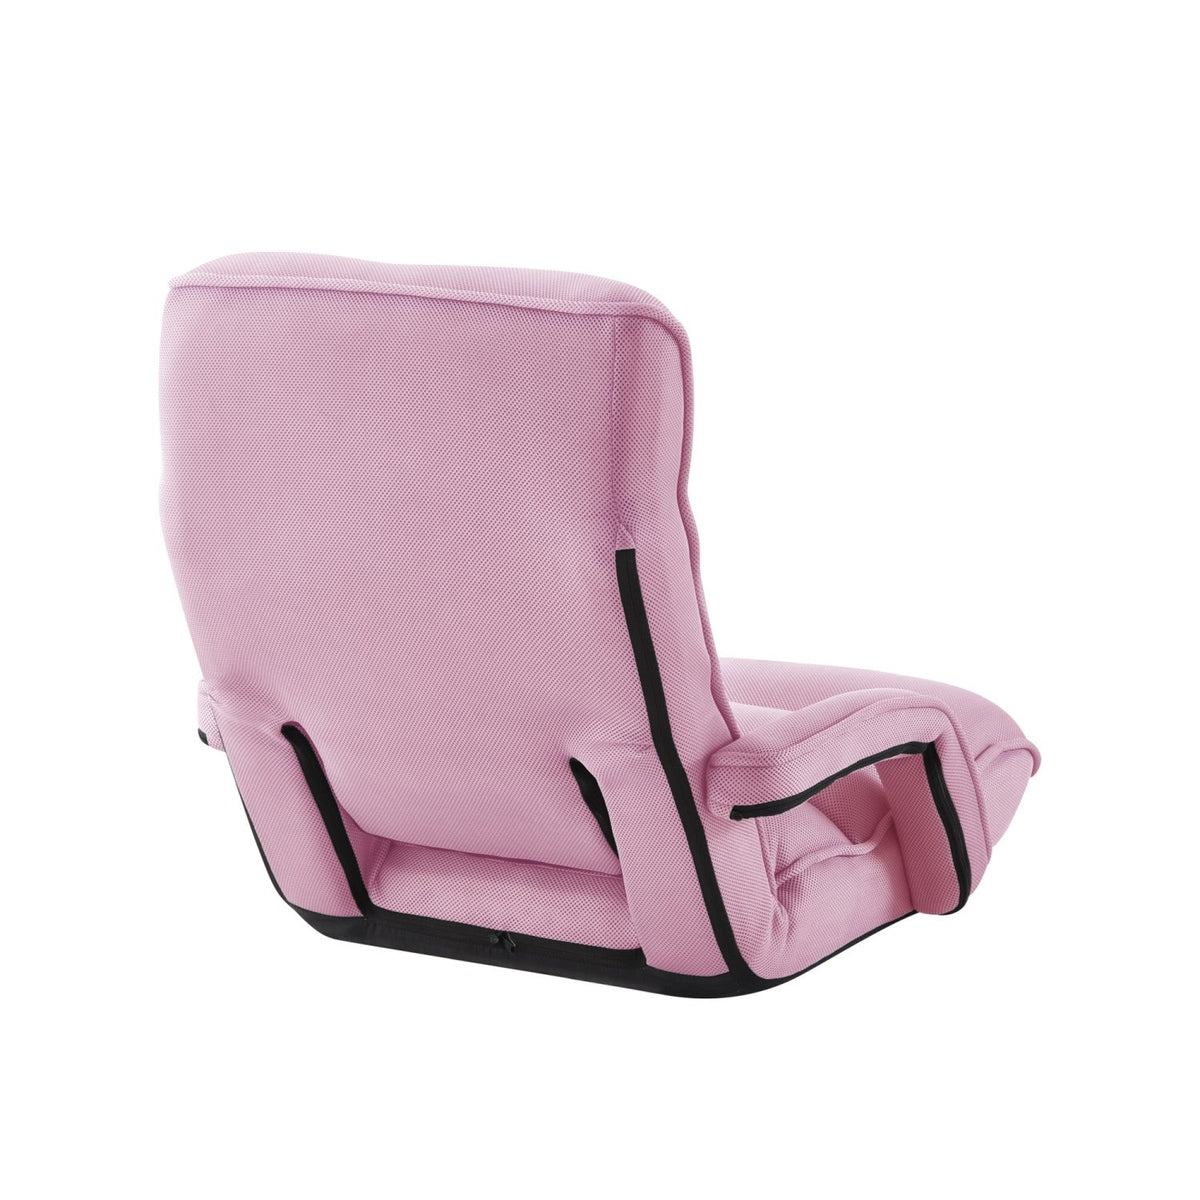 Dalilah Recliner/Floor Chair